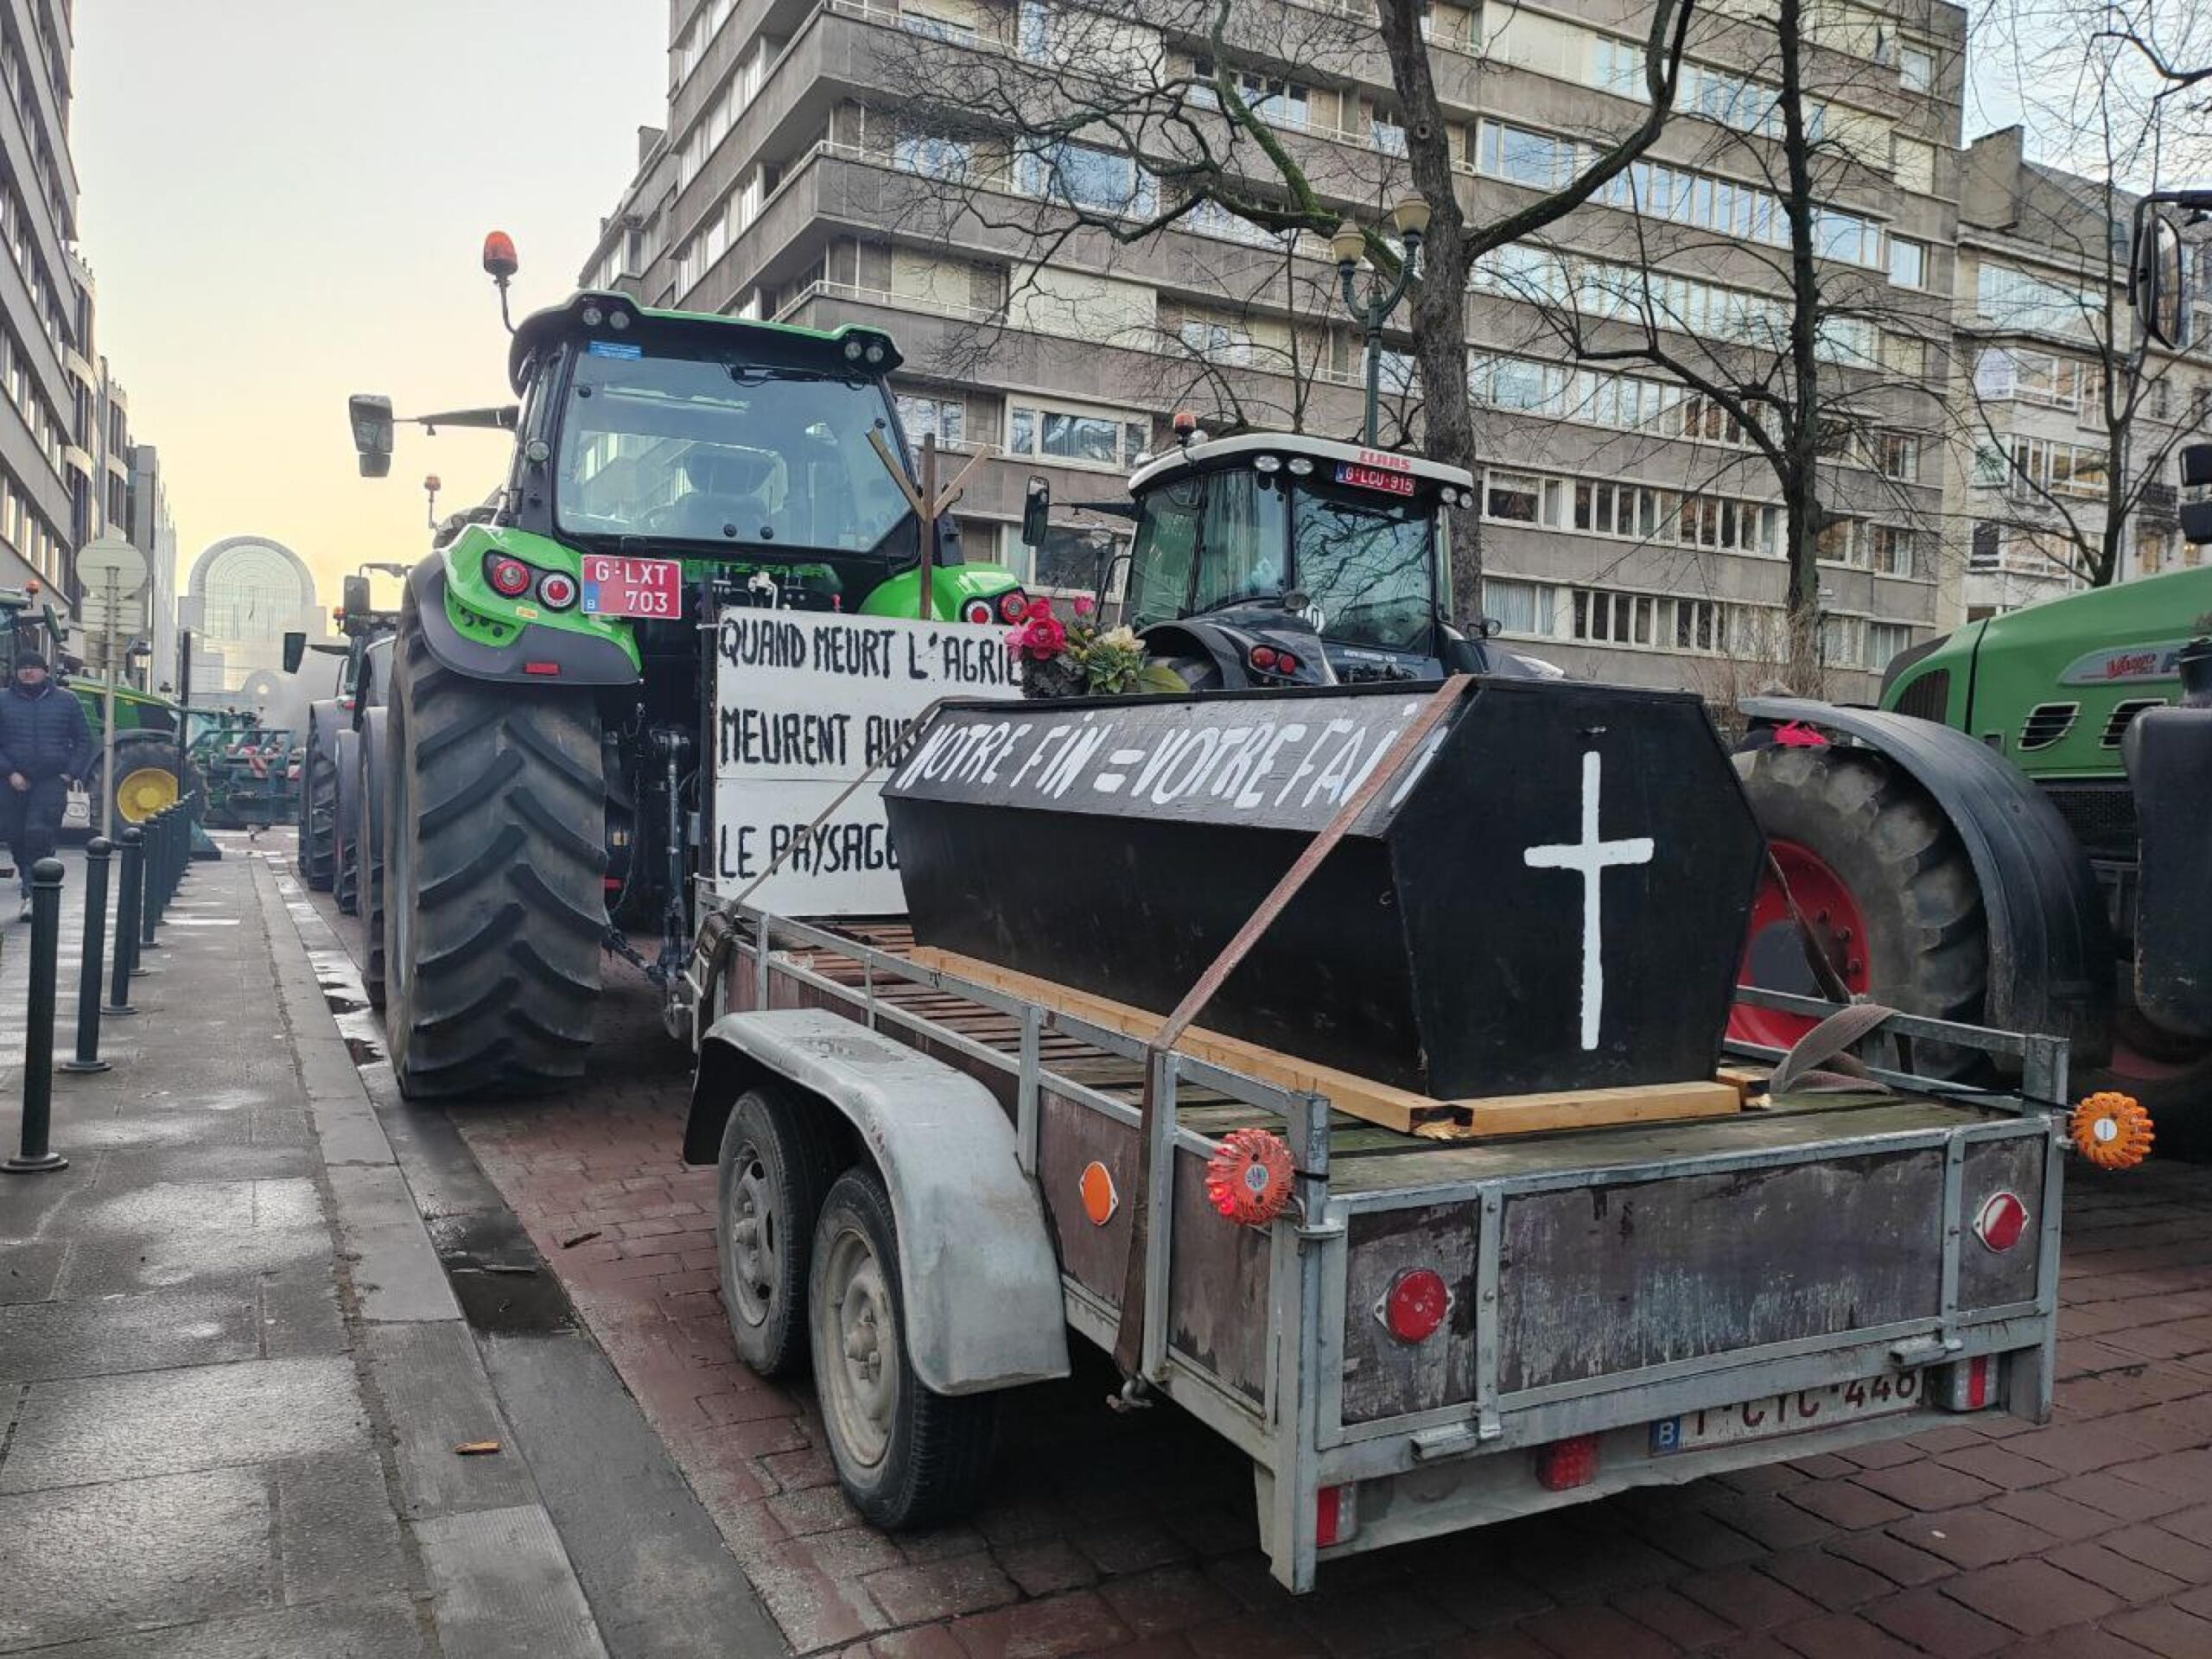 Protesta trattori, scontri a Bruxelles. Bloccato accesso all’aeroporto